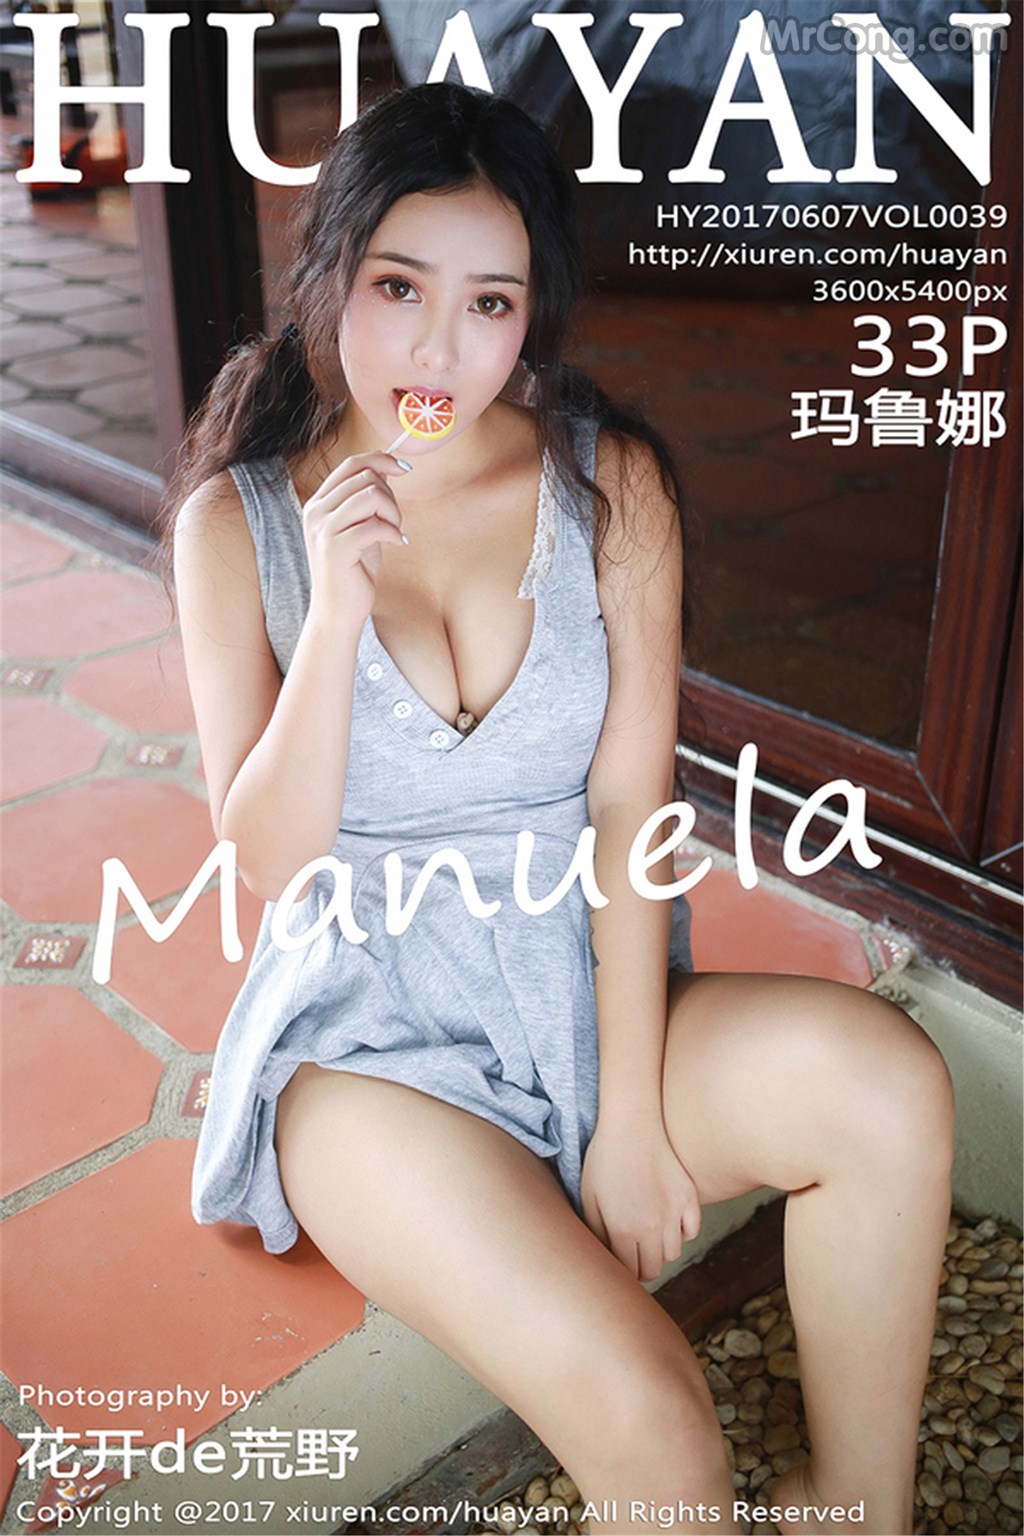 HuaYan Vol.039: Model Manuela (玛鲁娜) (34 photos)